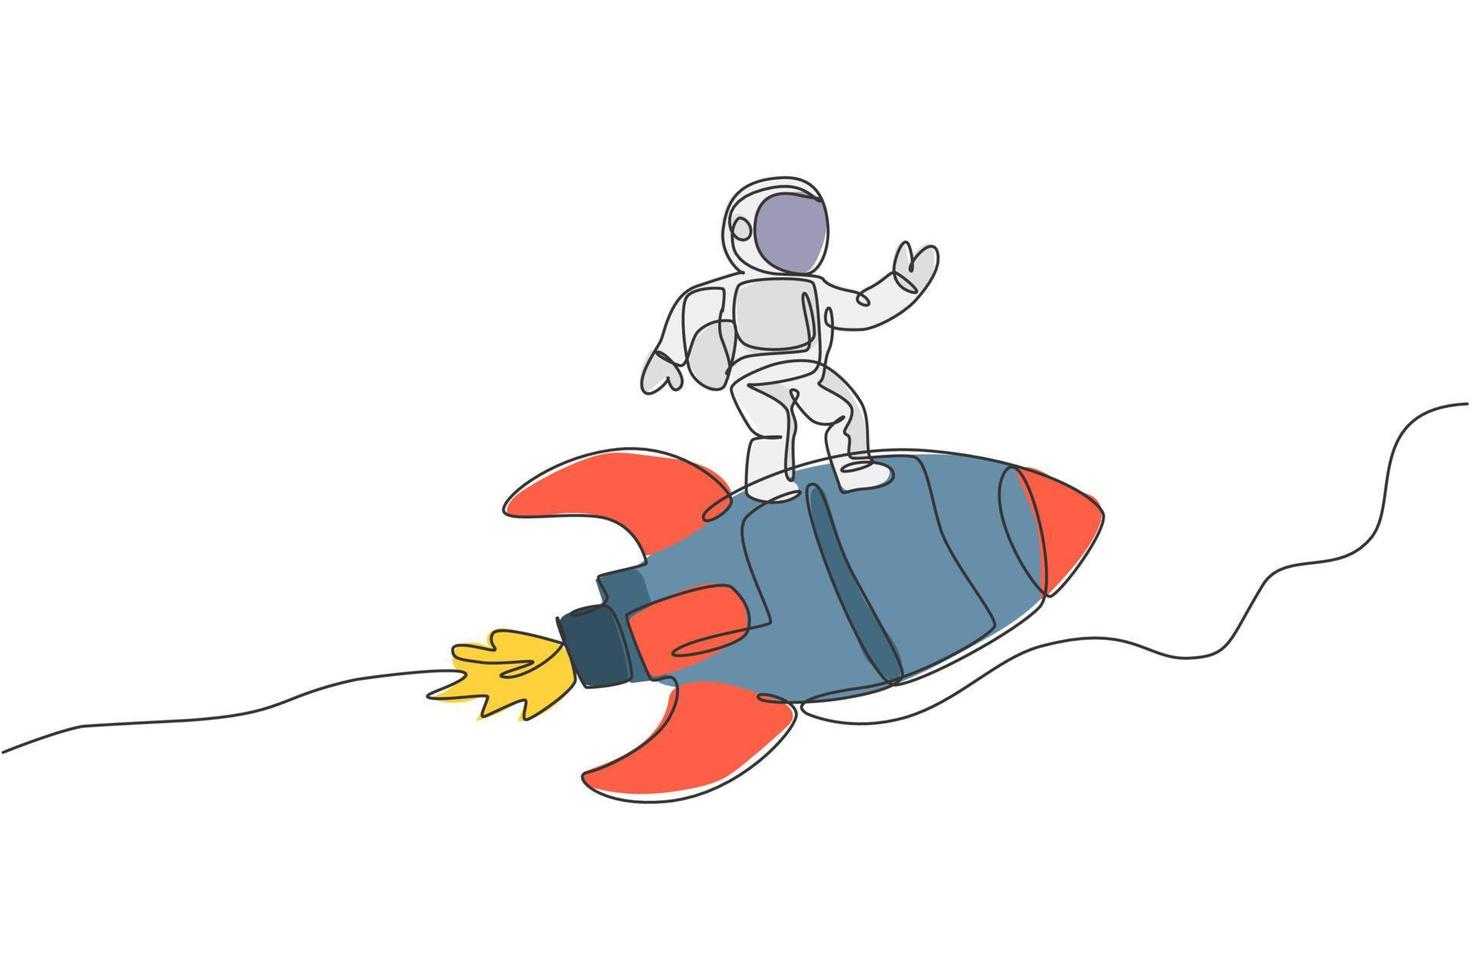 Eine einzige Strichzeichnung eines Astronauten im Raumanzug, der fliegt und den Weltraum entdeckt, während er auf der Illustration eines Raketenraumschiffs steht. Erforschung des Weltraumkonzepts. modernes Design mit durchgehender Linienführung vektor